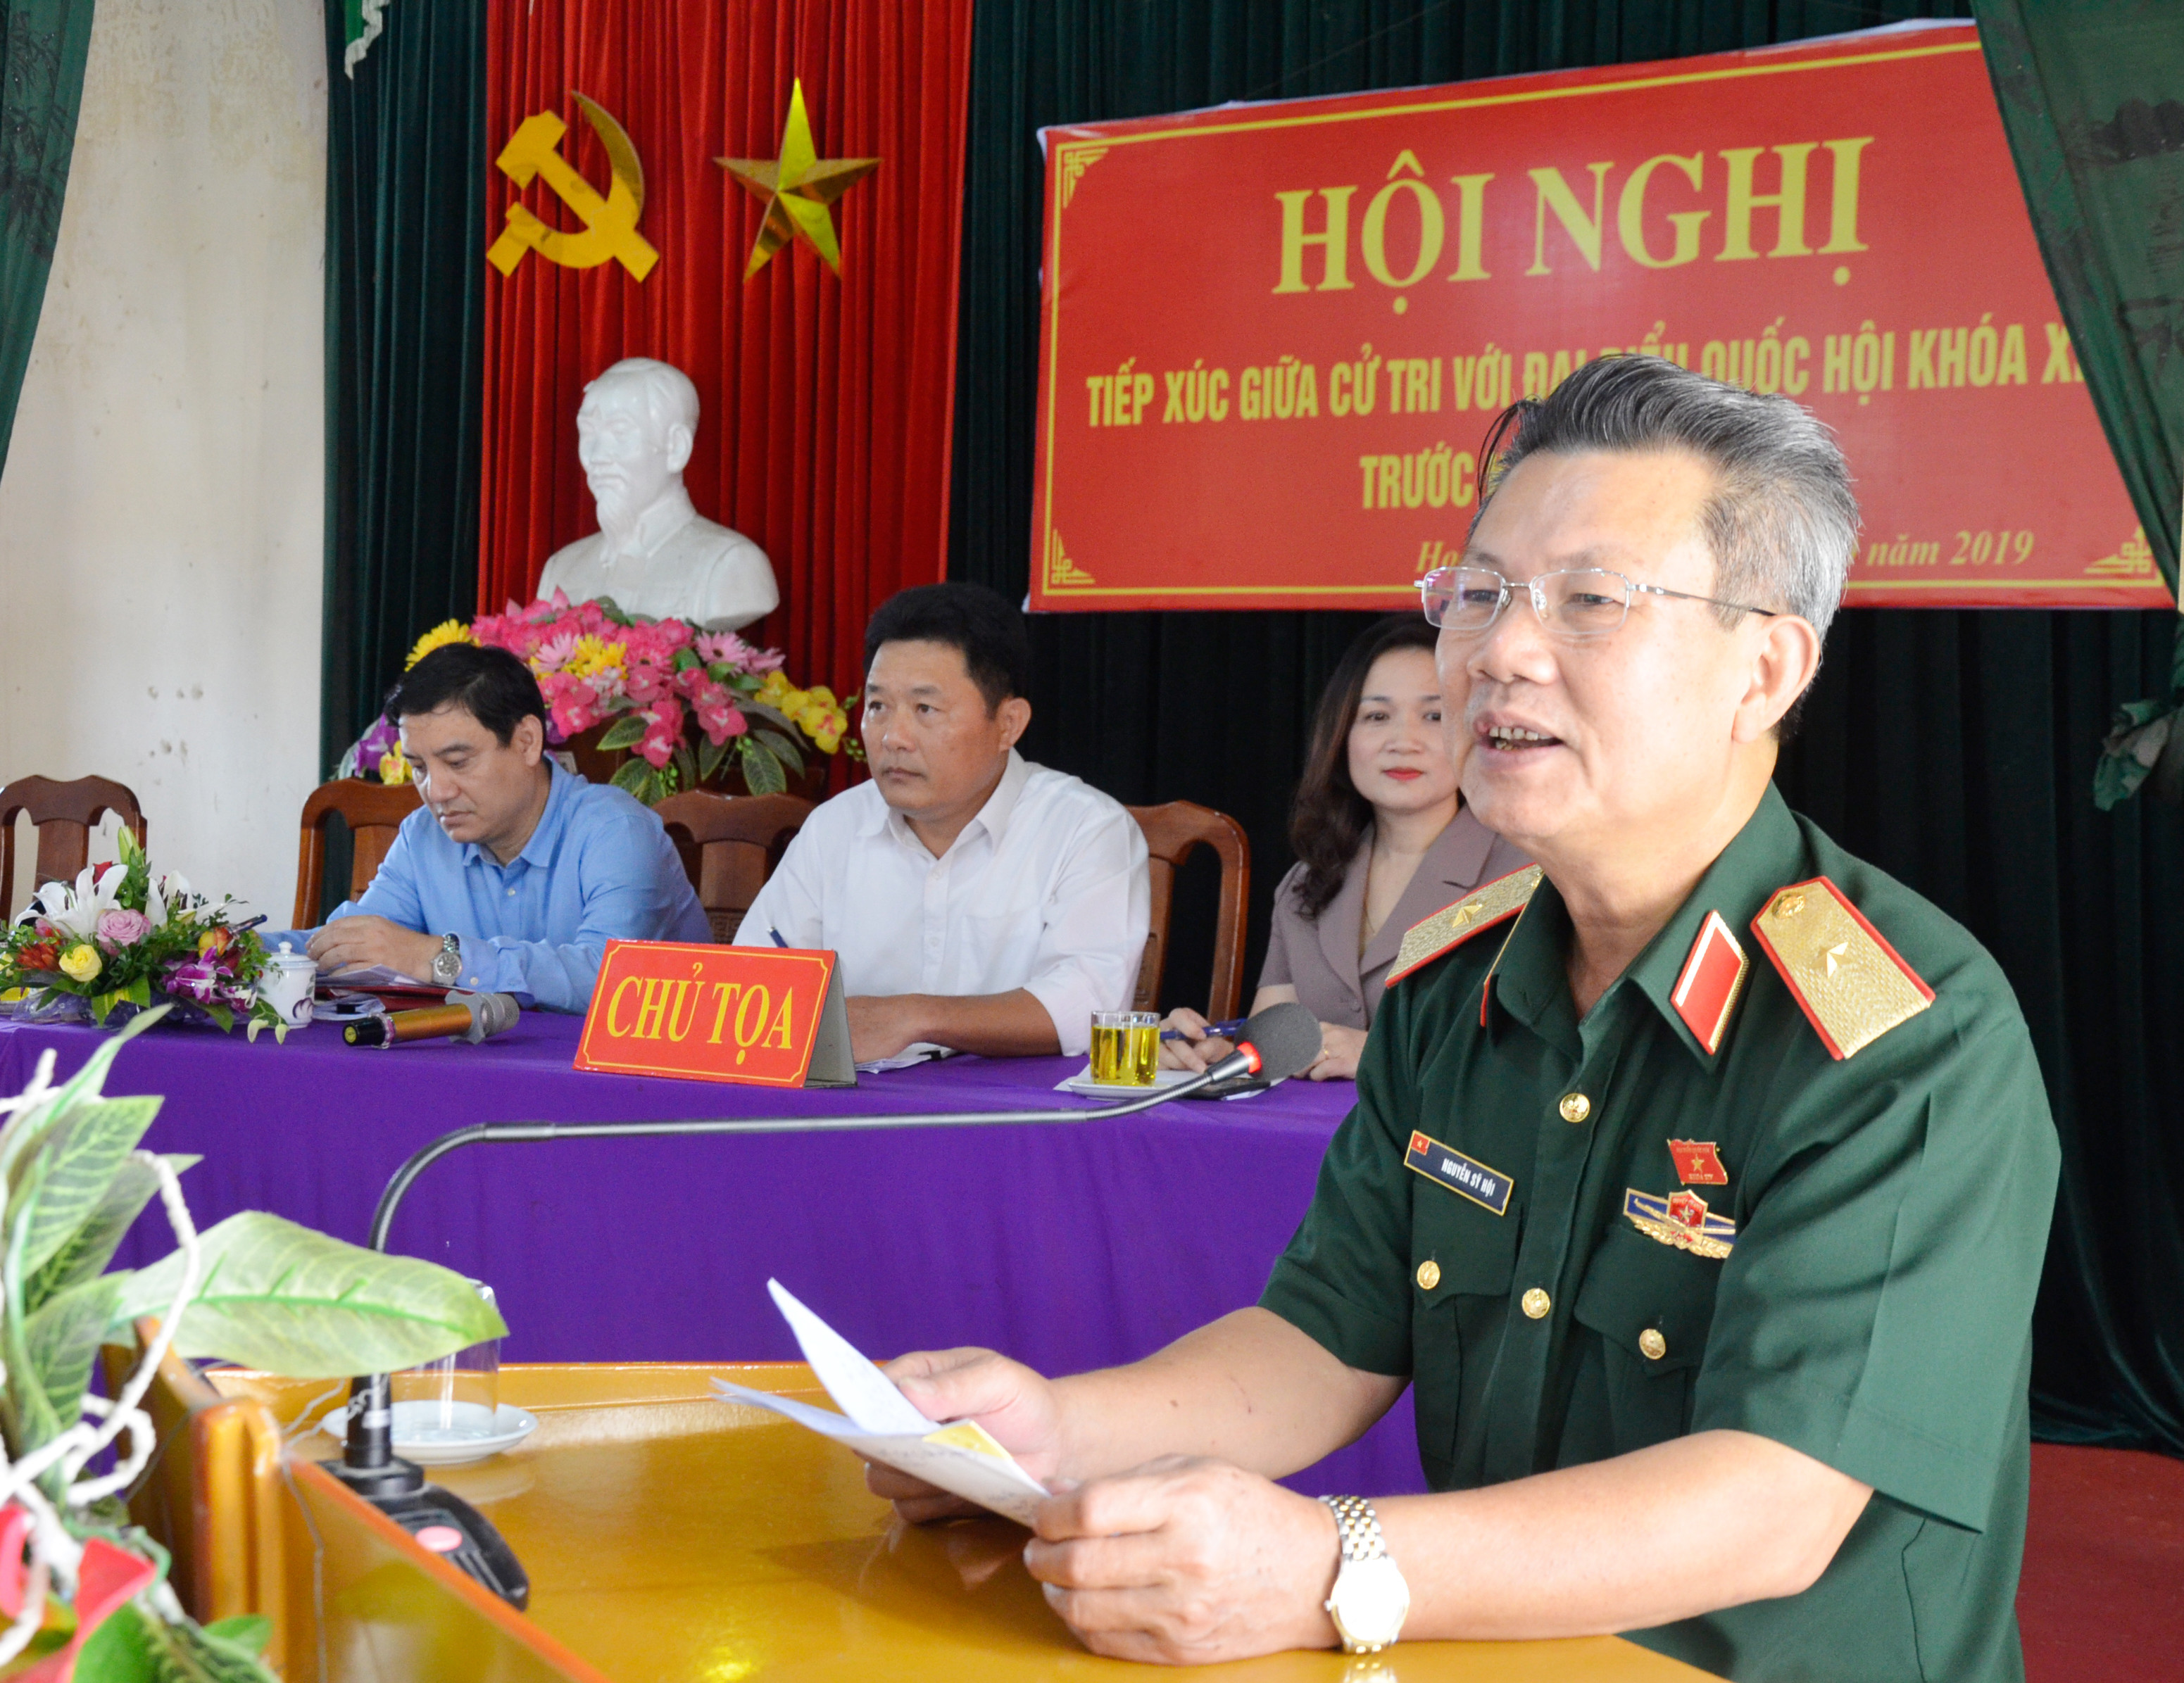 Thiếu tướng Nguyễn Sỹ Hội thông báo với cử tri dự kiến nội dung, chương trình kỳ họp thứ 8, Quốc hội khóa XIV sắp tới. Ảnh: Thanh Lê